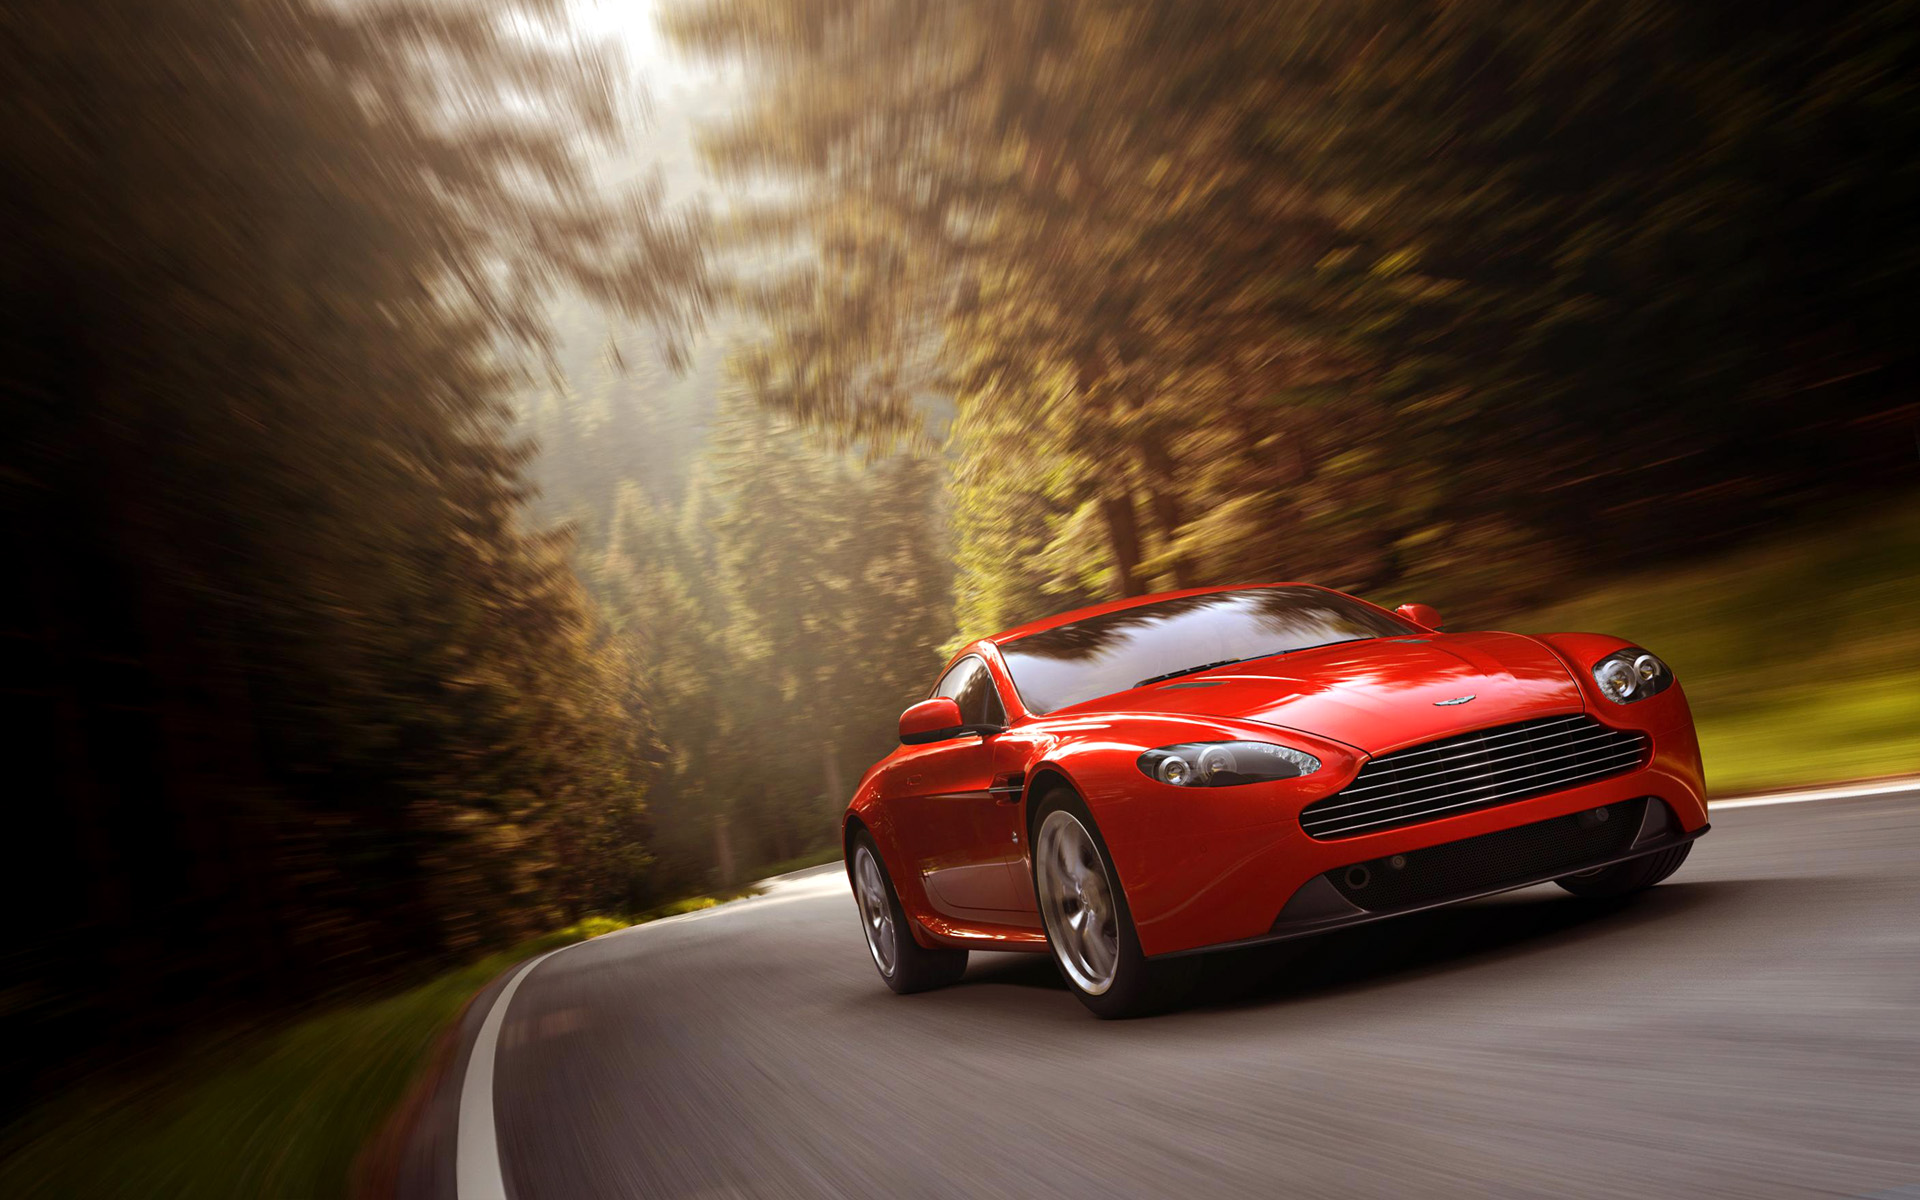  2012 Aston Martin V8 Vantage Wallpaper.